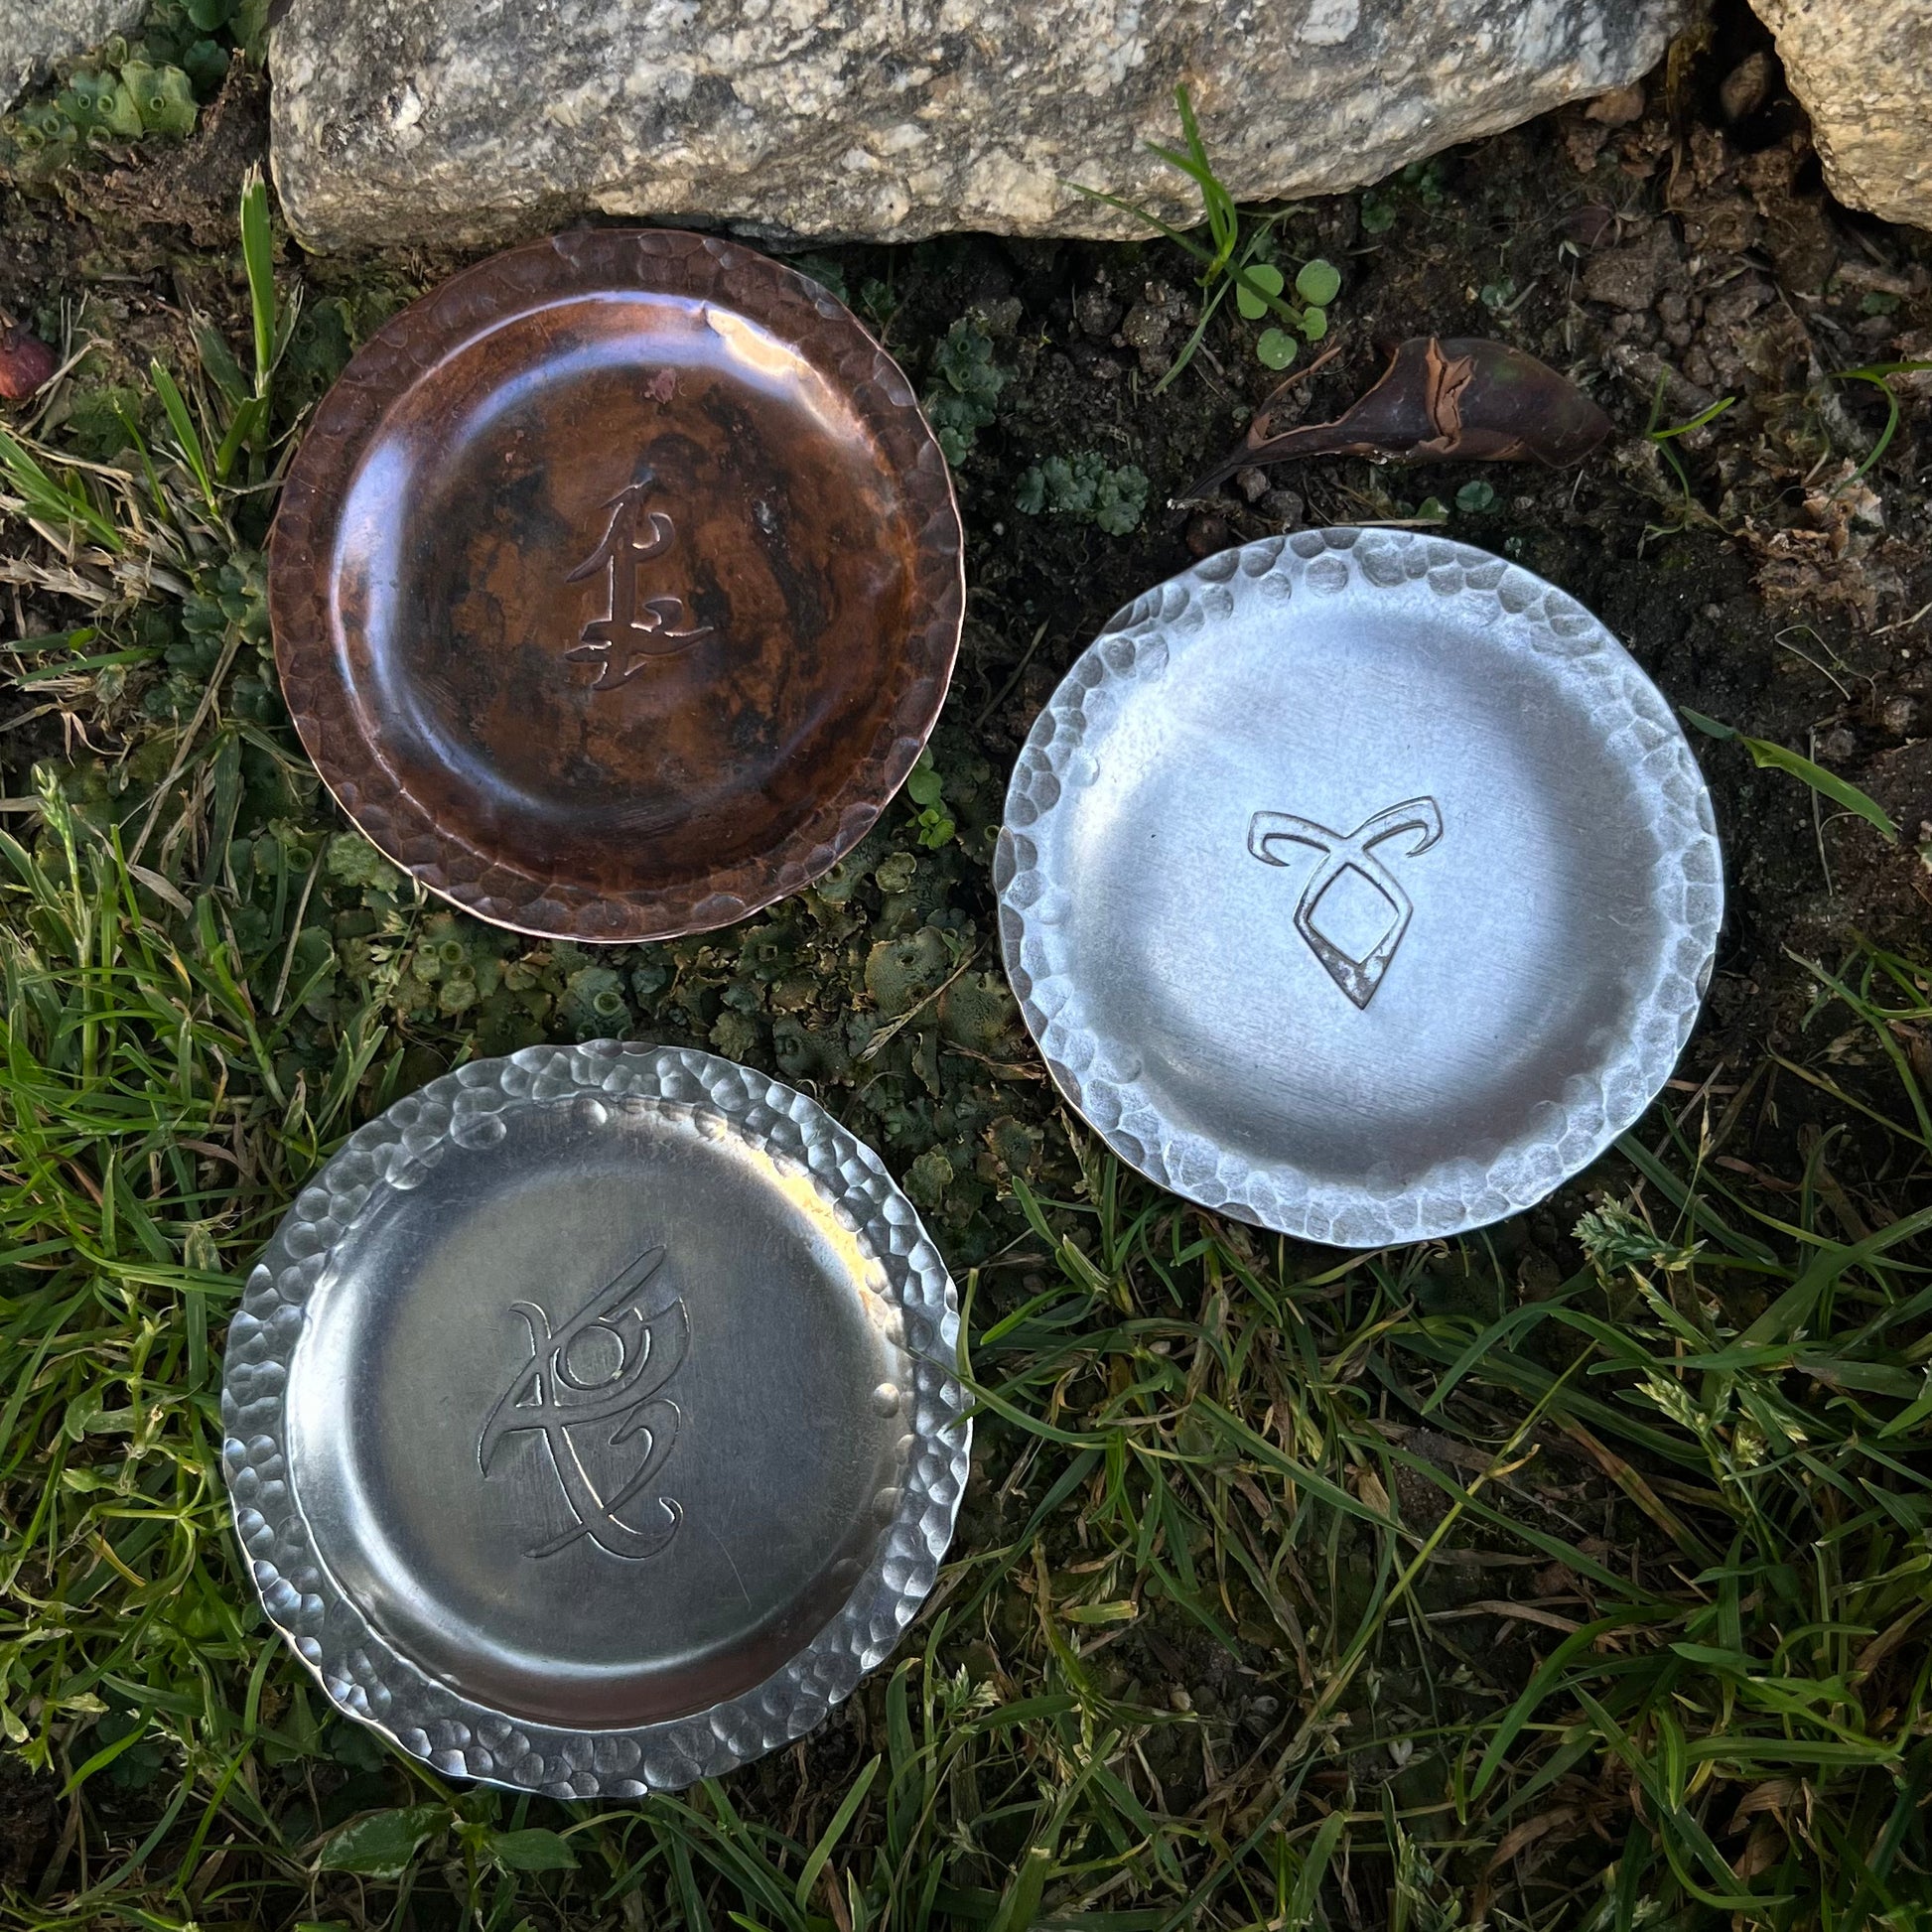 shadowhunter rune trinket dish - ring dish